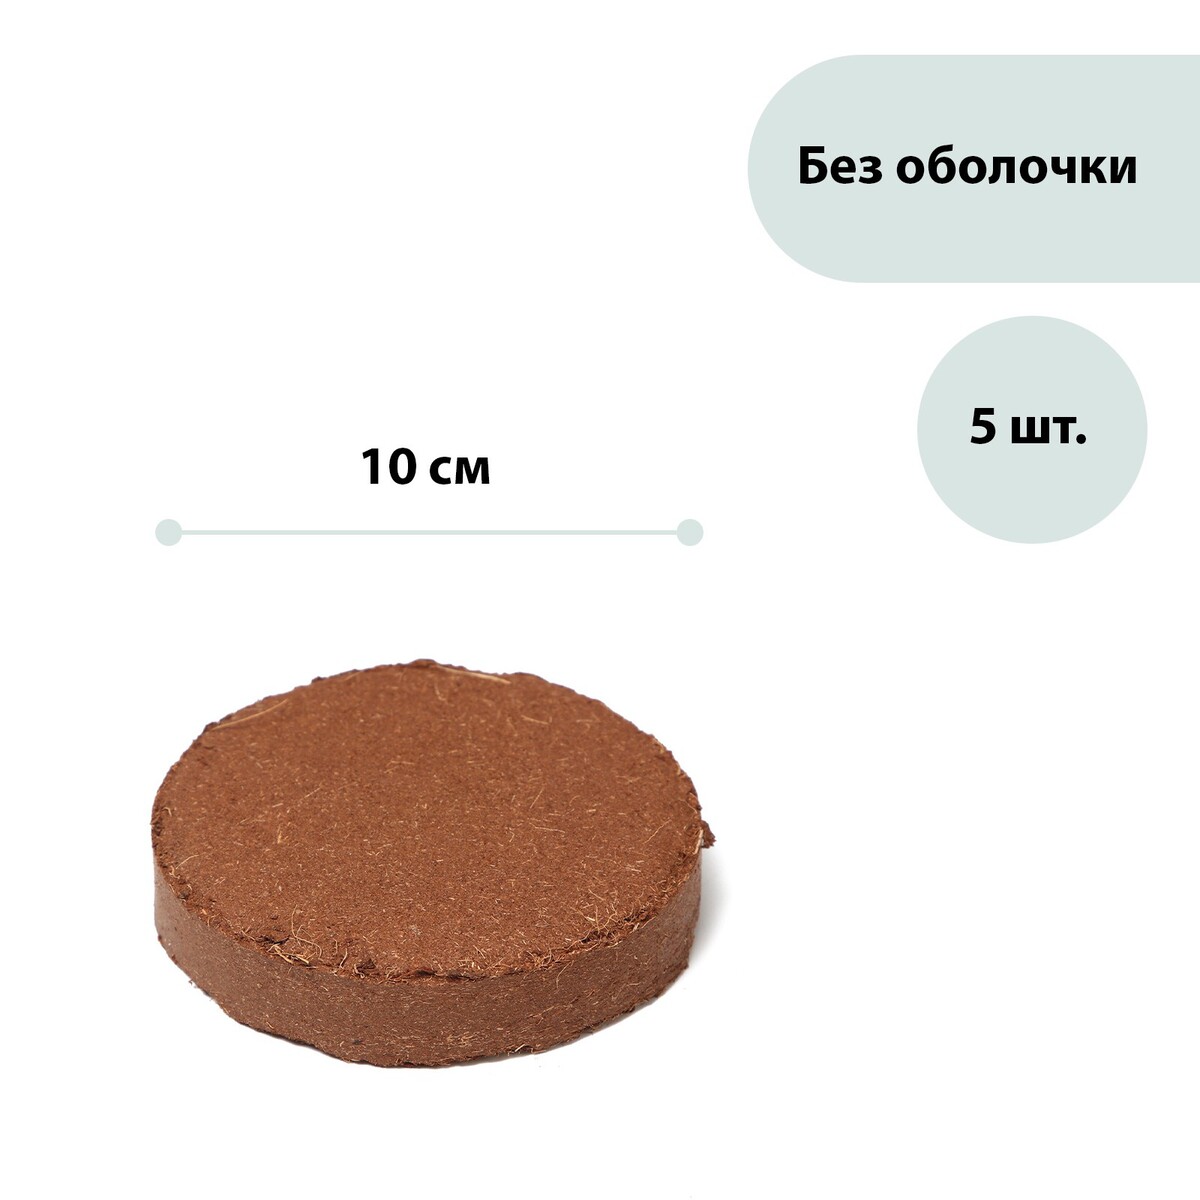 Субстрат кокосовый в таблетках, 4,5 л, d = 10 см, набор 5 шт., без оболочки, greengo hth быстрый стабилизированный хлор minitab shock в таблетках по 20 г 1 2 кг